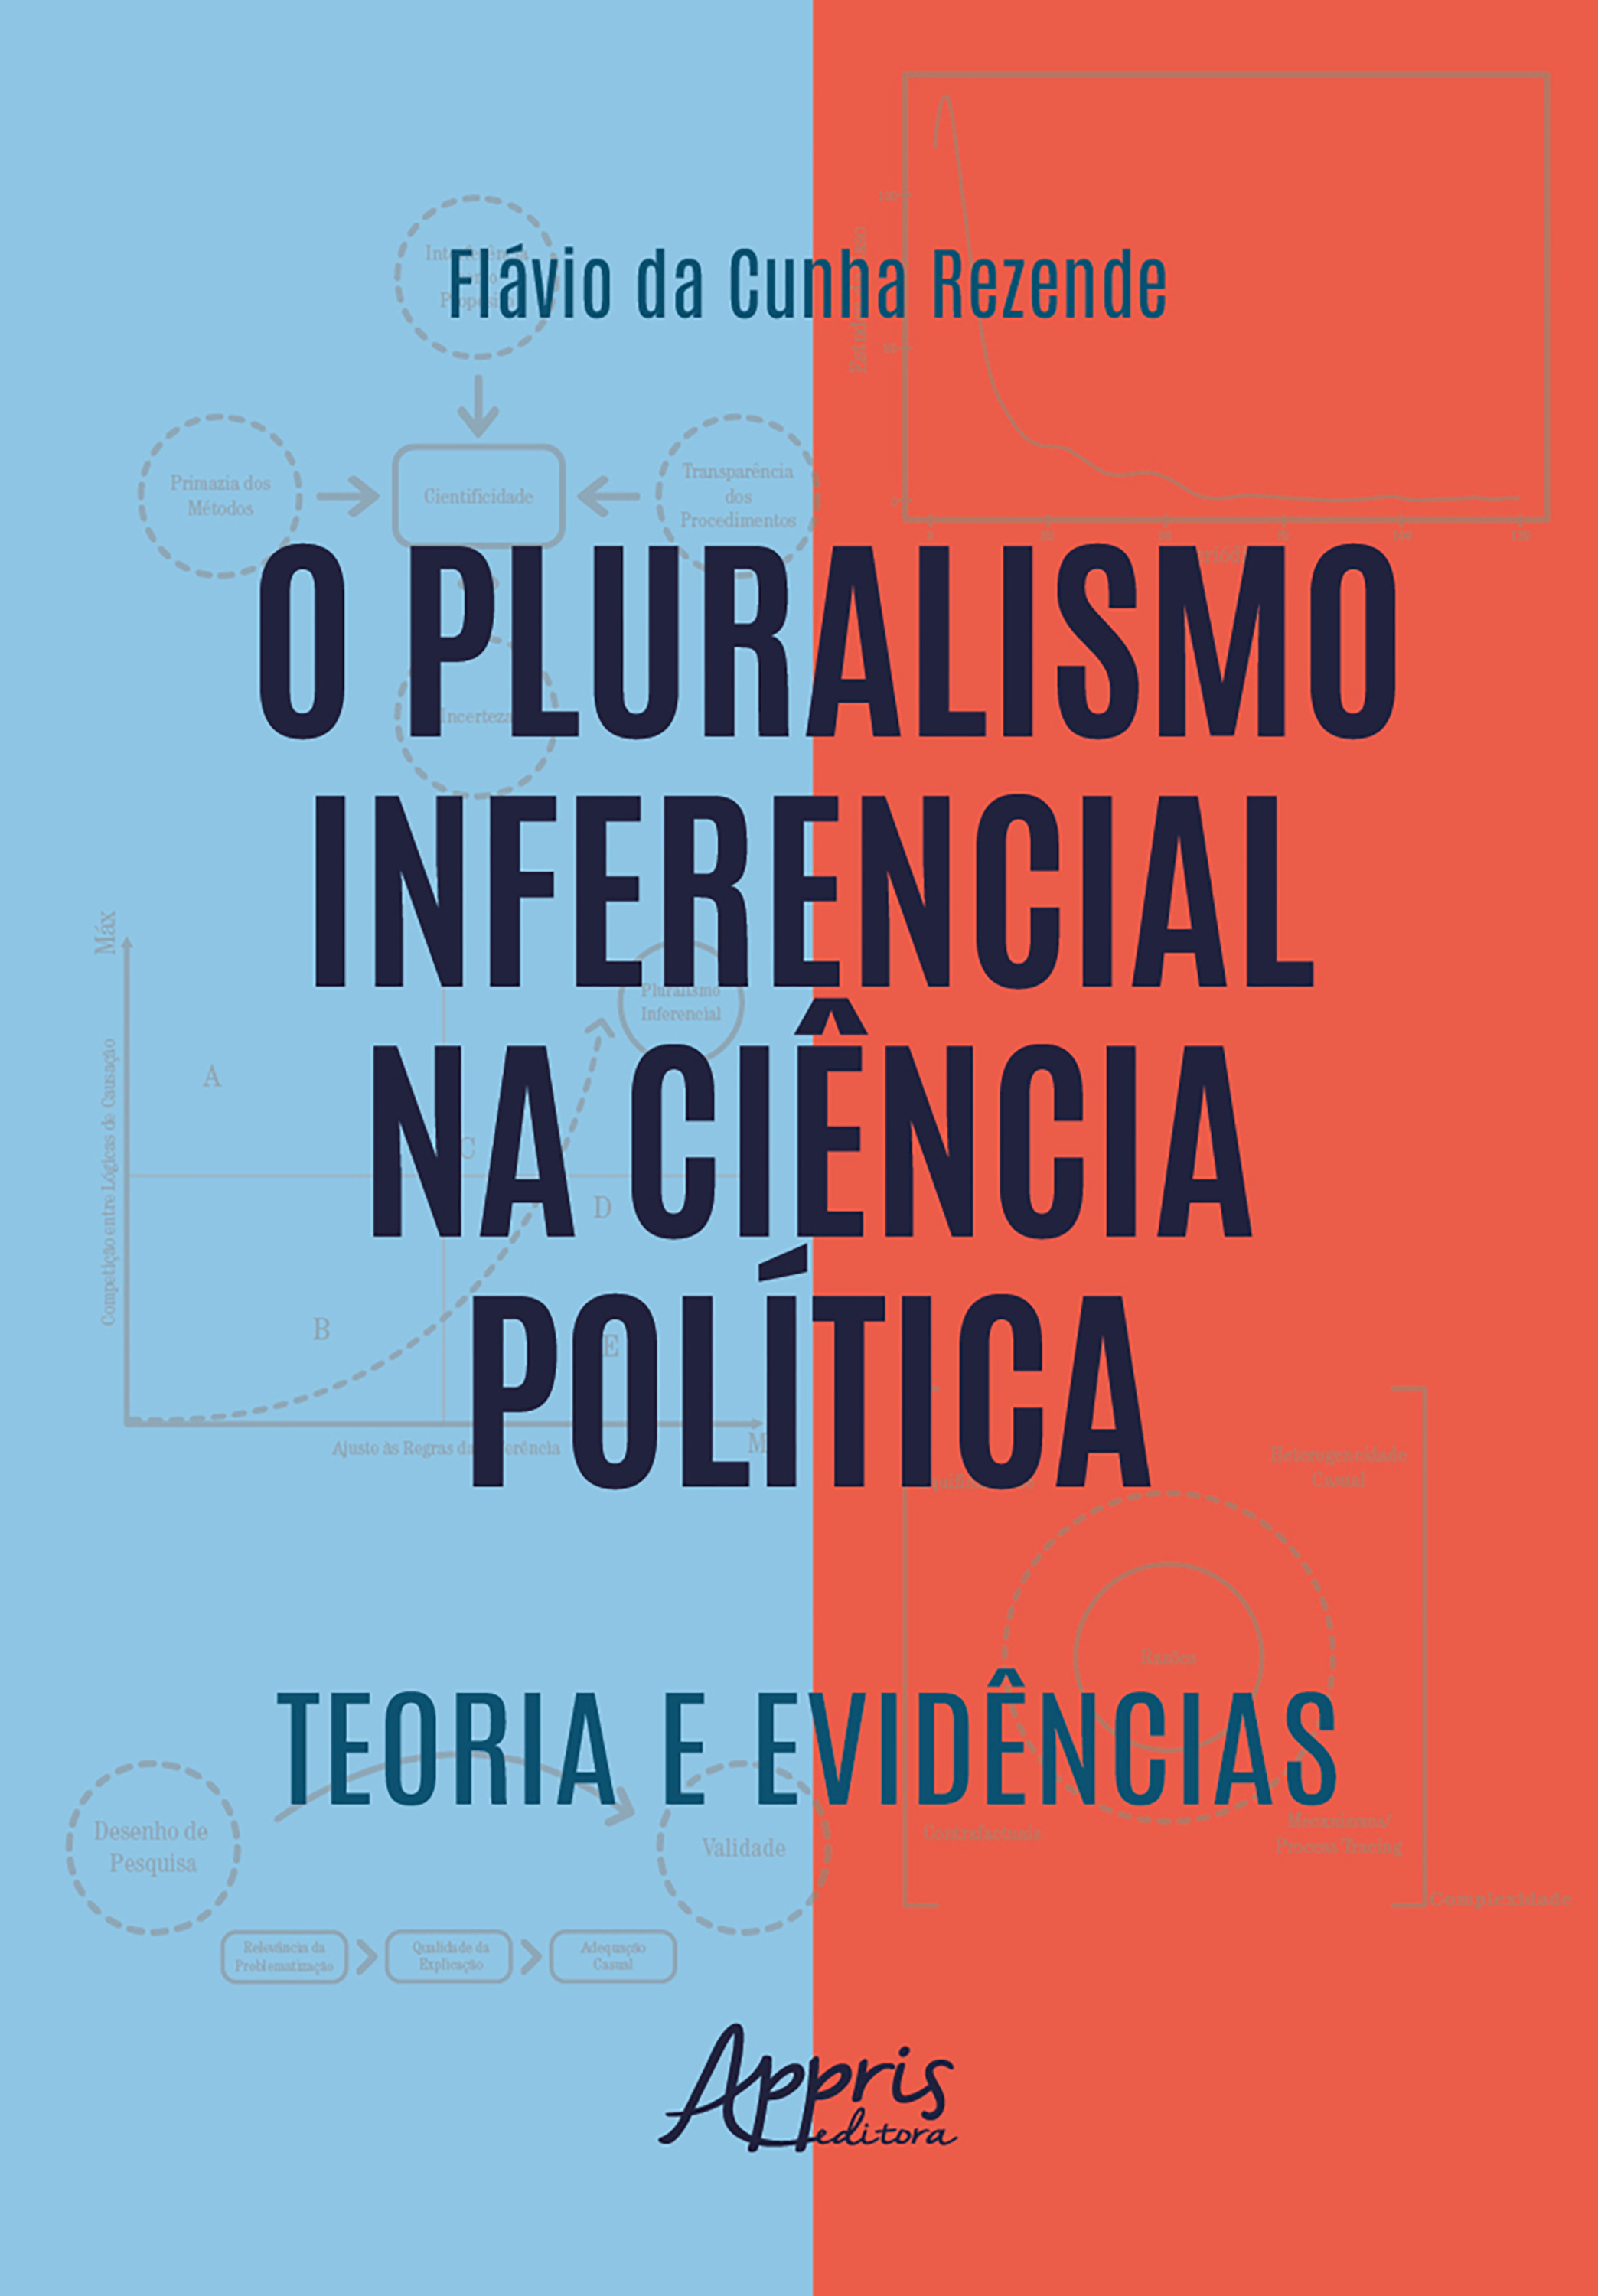 O Pluralismo Inferencial na Ciência Política: Teoria e Evidências